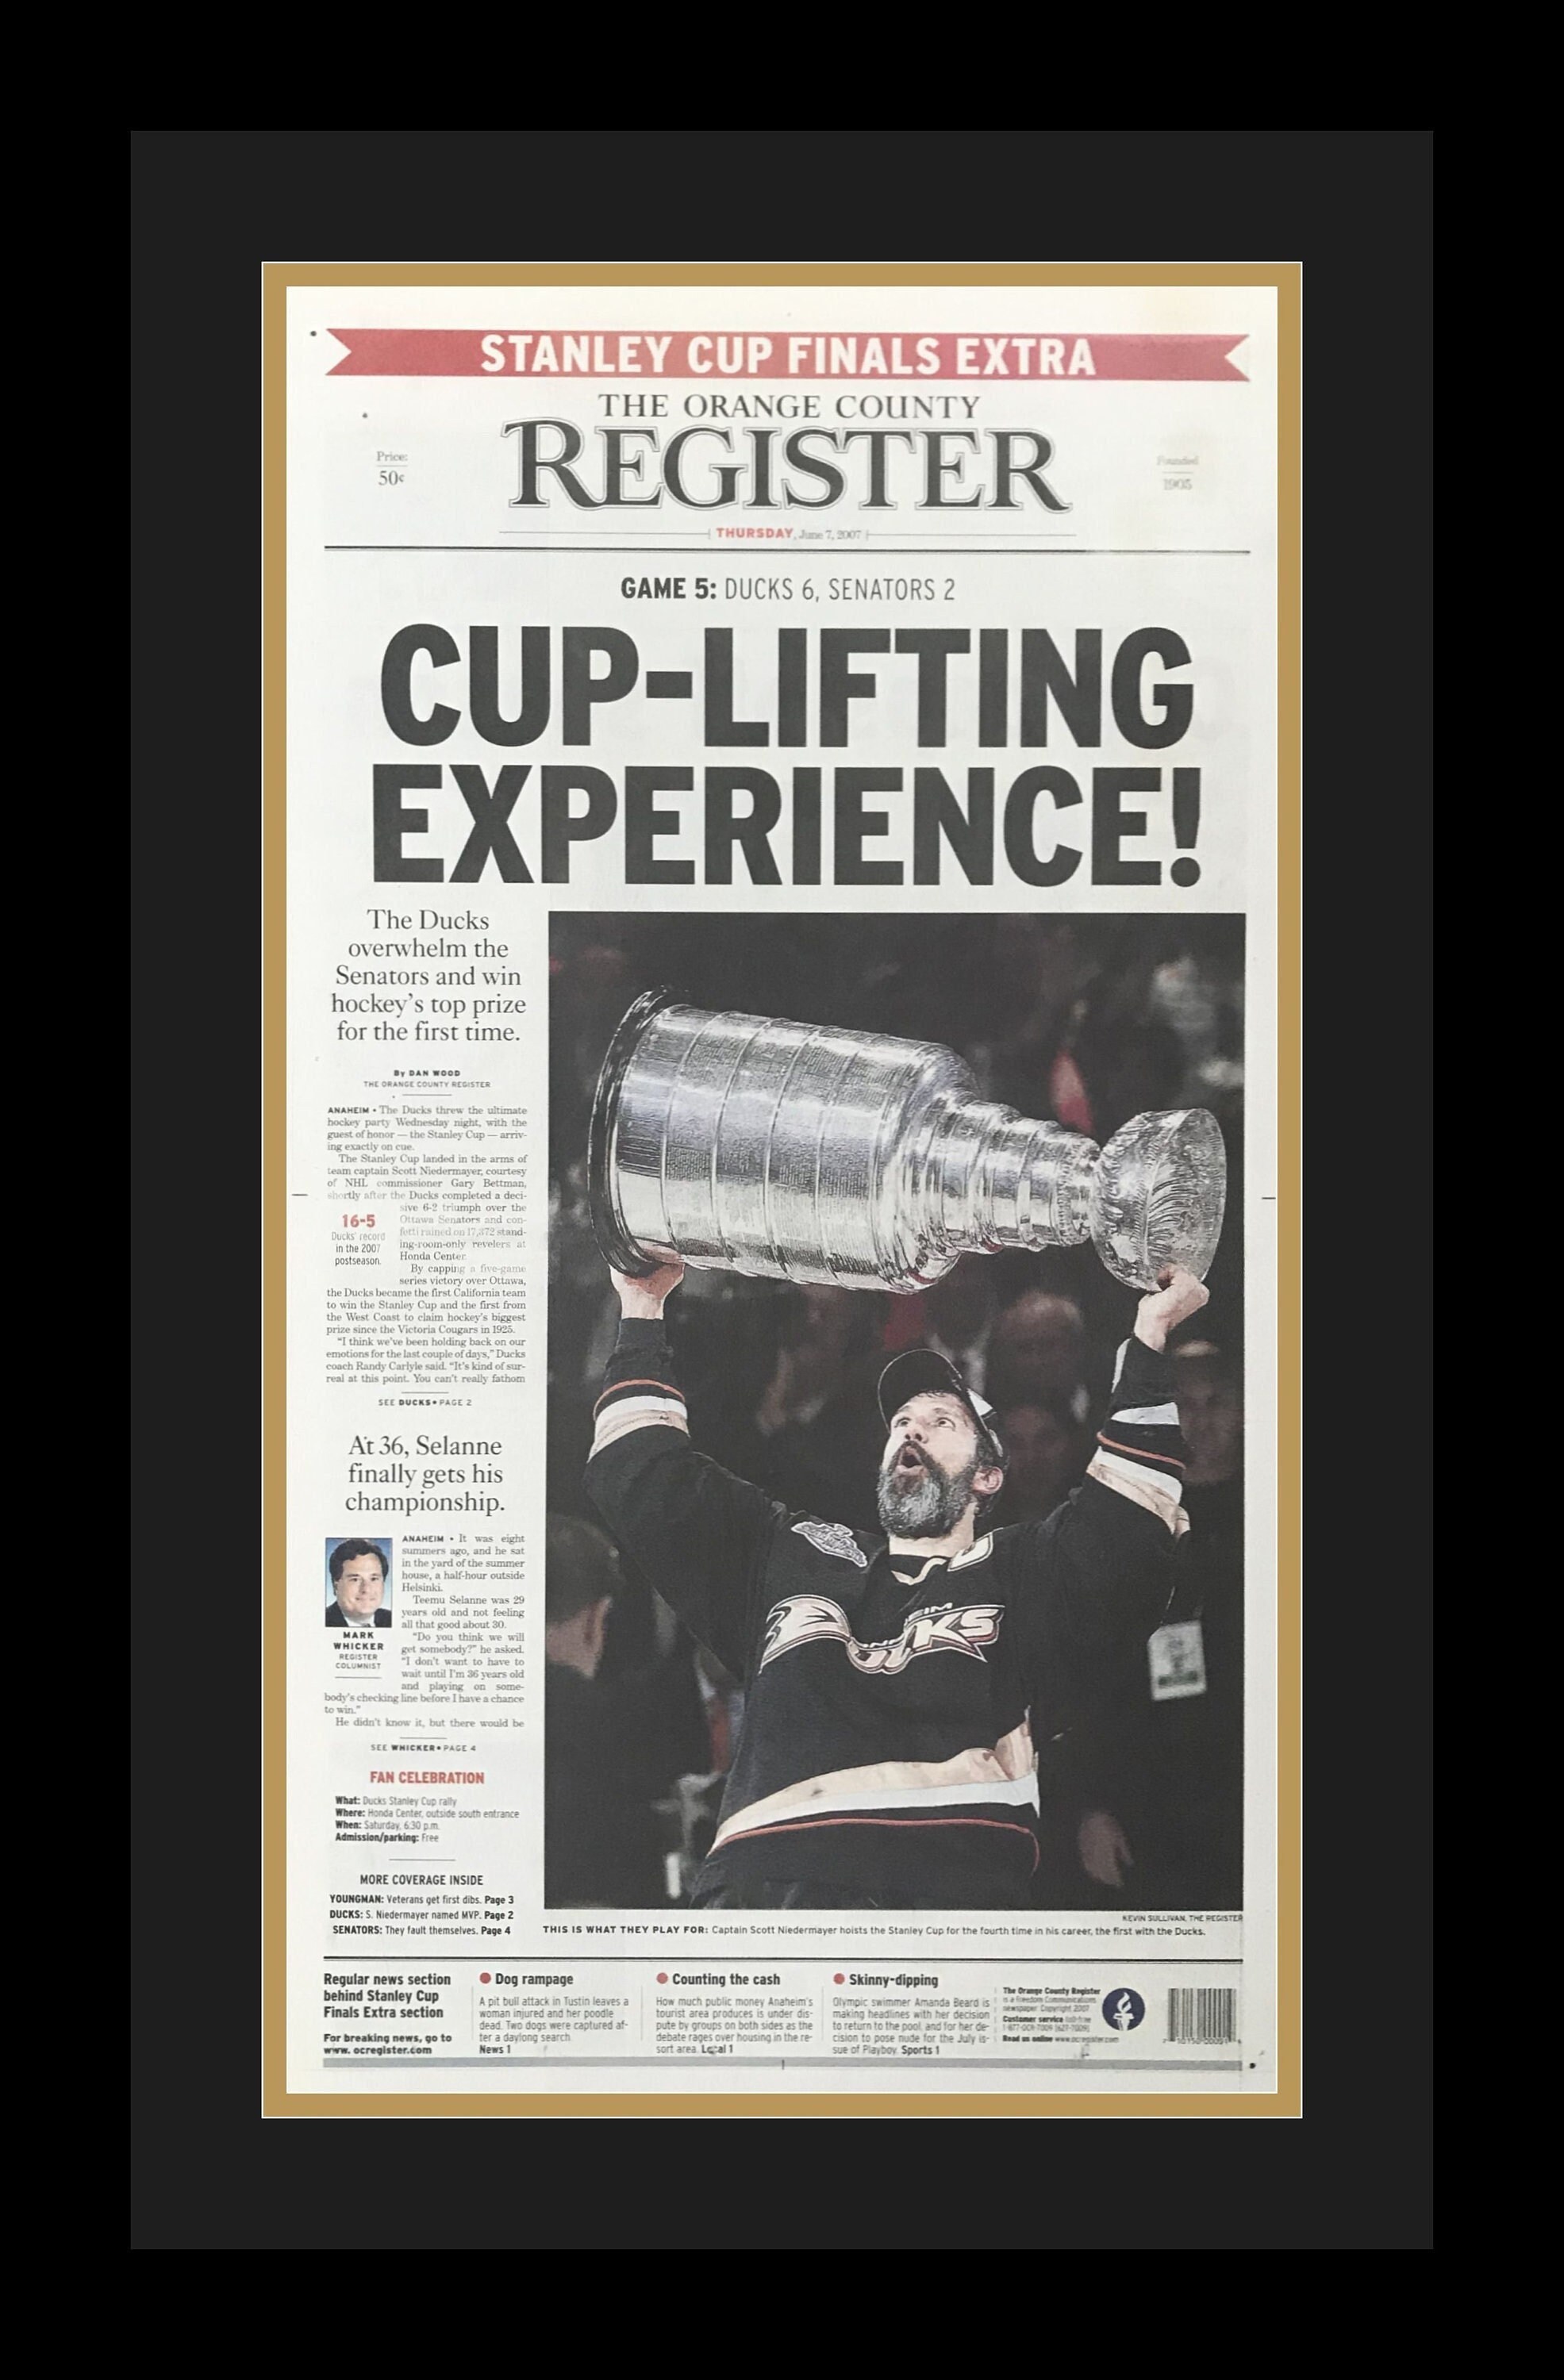 2007 Anaheim Ducks Stanley Cup Championship Ring - www